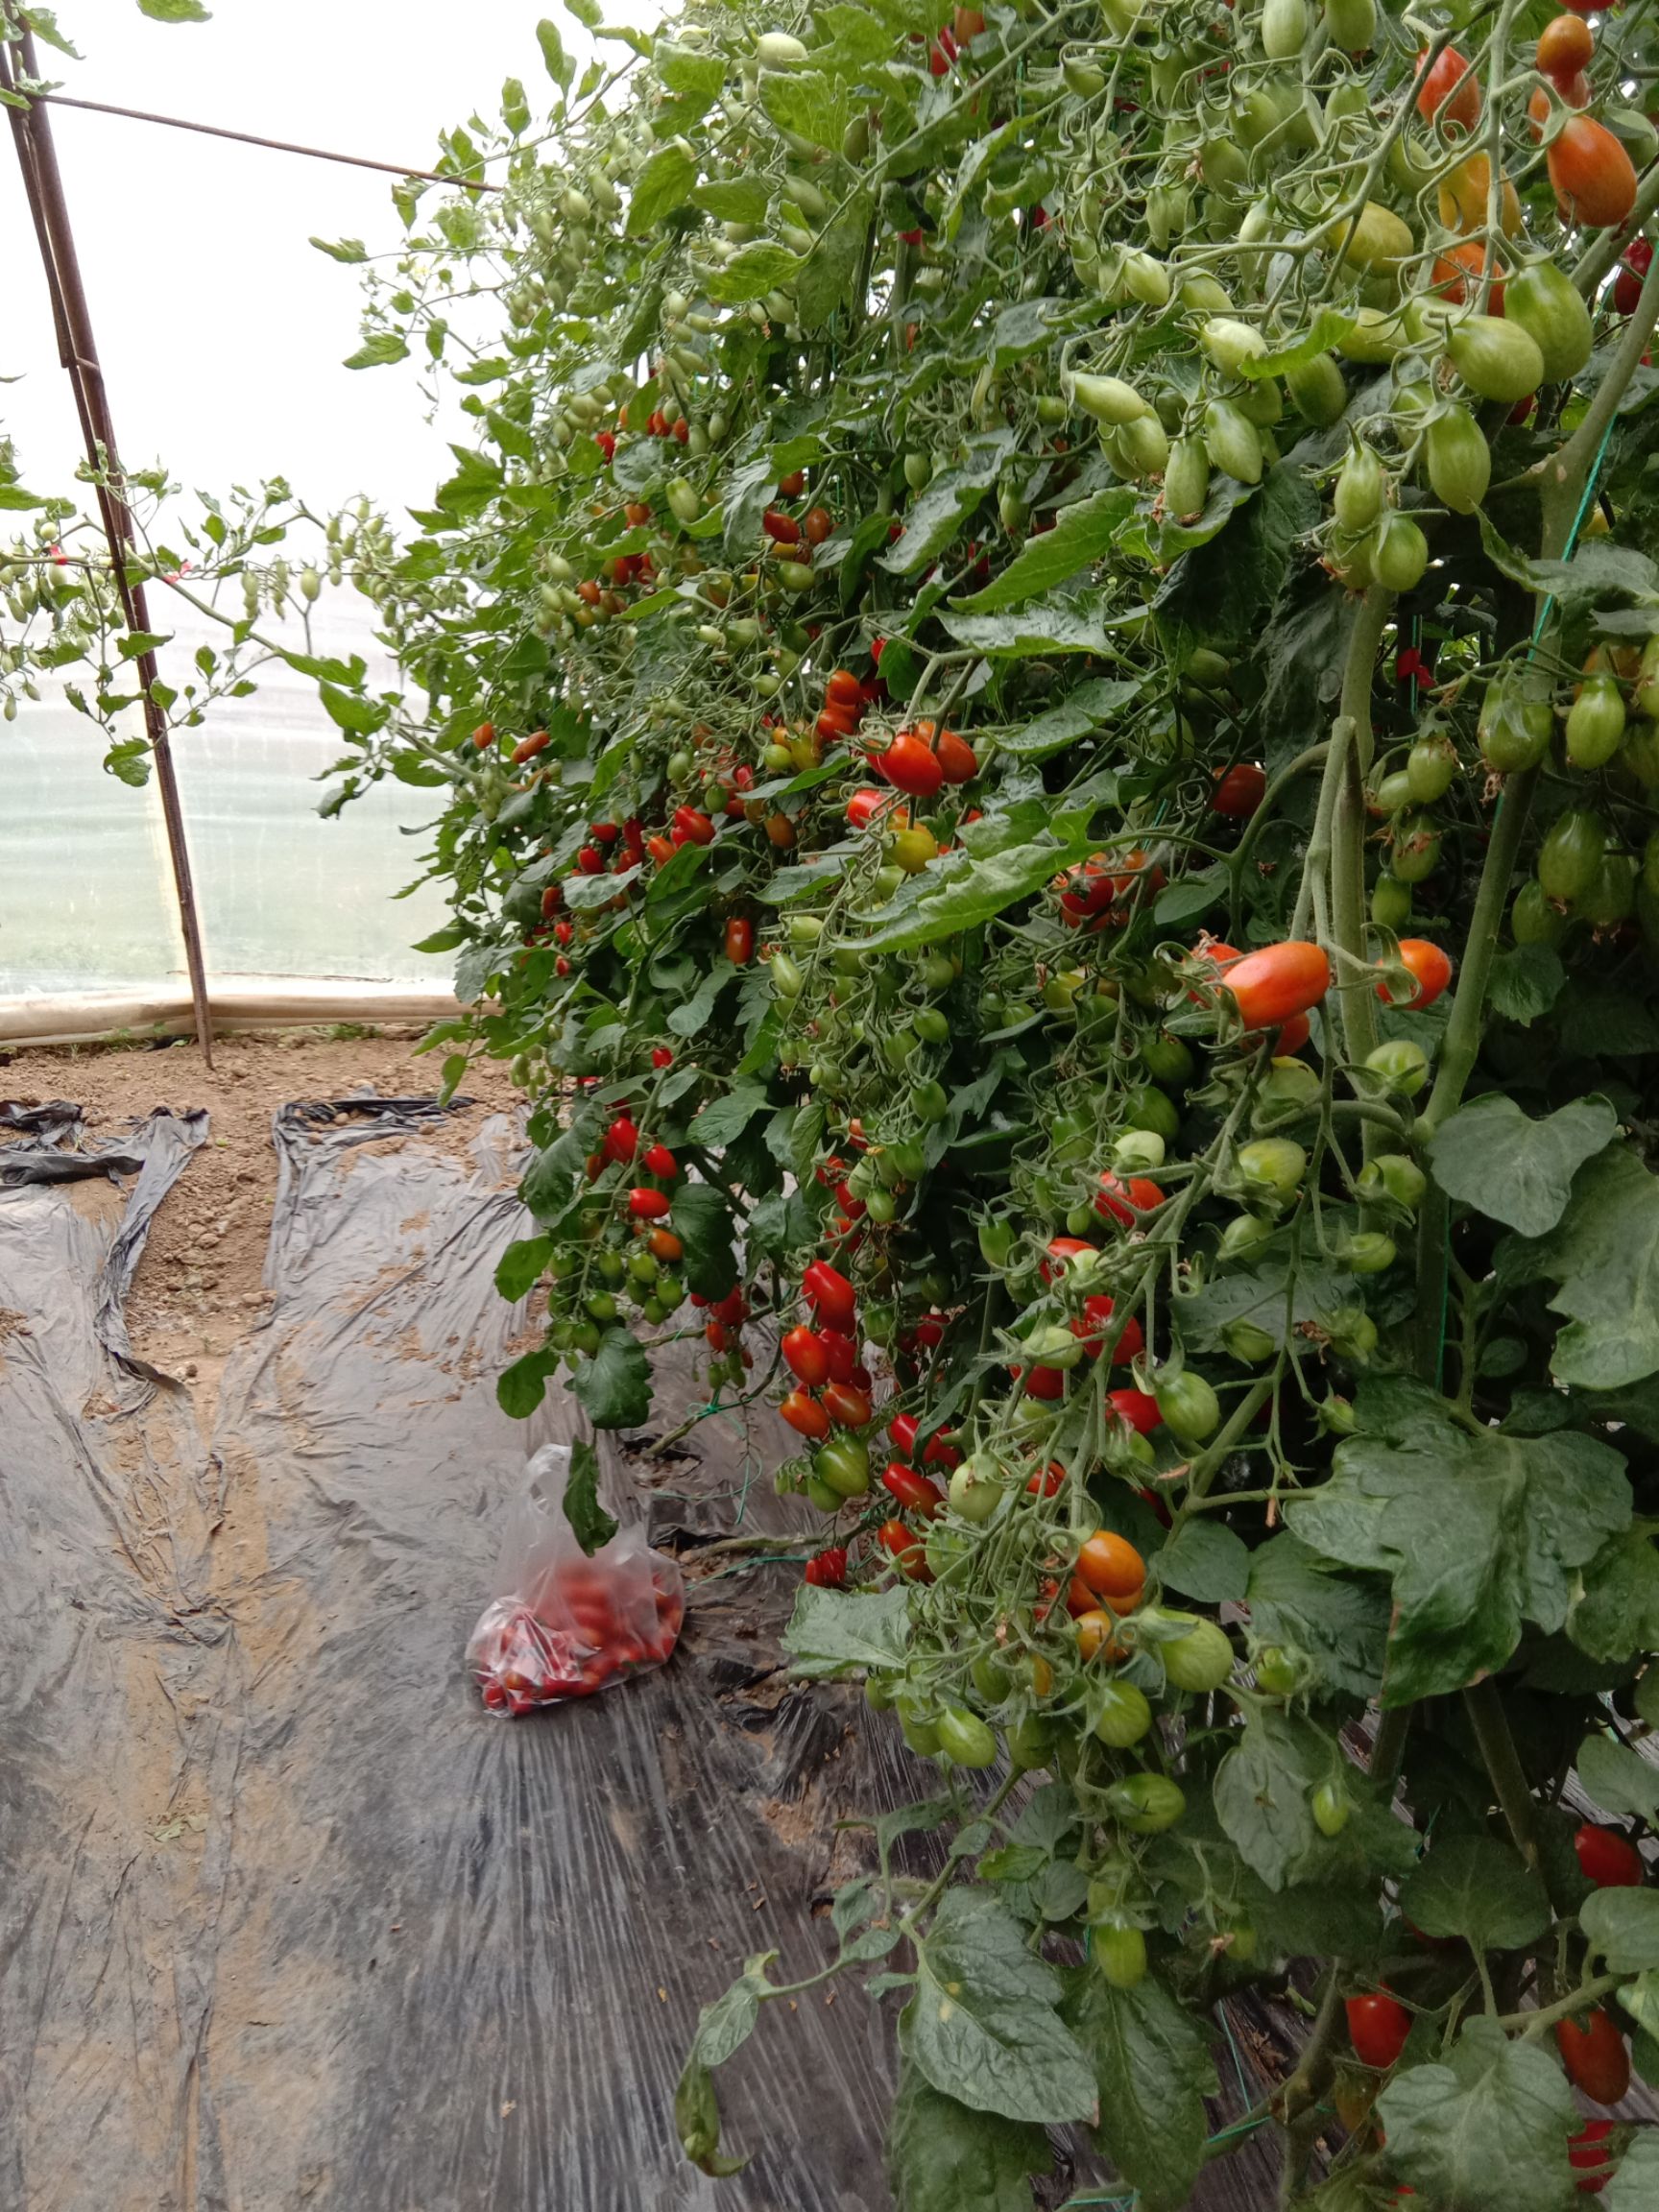 409小柿子 辽宁丹东409(凤珠)小西红柿在北京房山区阎村镇张庄村栽培